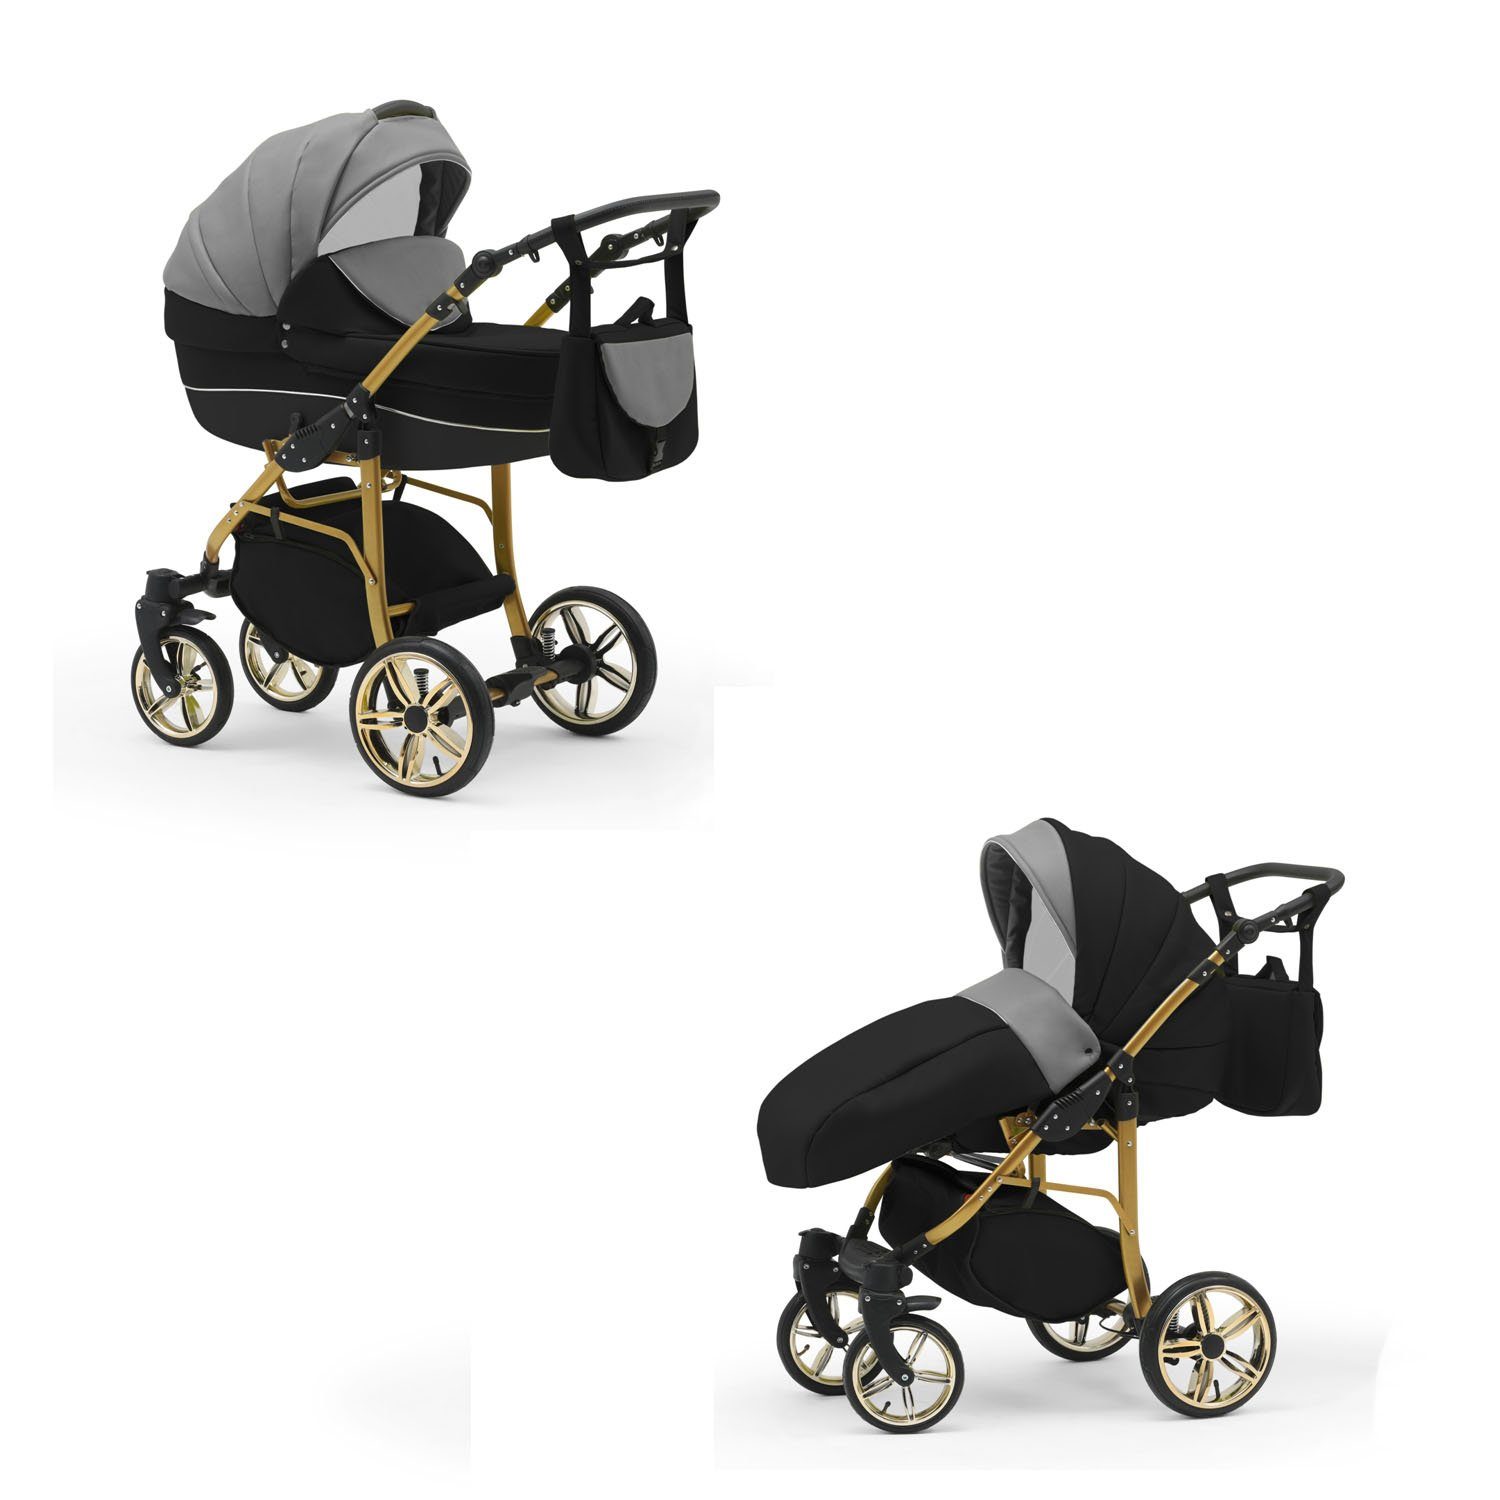 babies-on-wheels 1 2 - Teile Cosmo Gold Kombi-Kinderwagen 46 in - 13 Kinderwagen-Set in Farben Grau-Schwarz-Schwarz